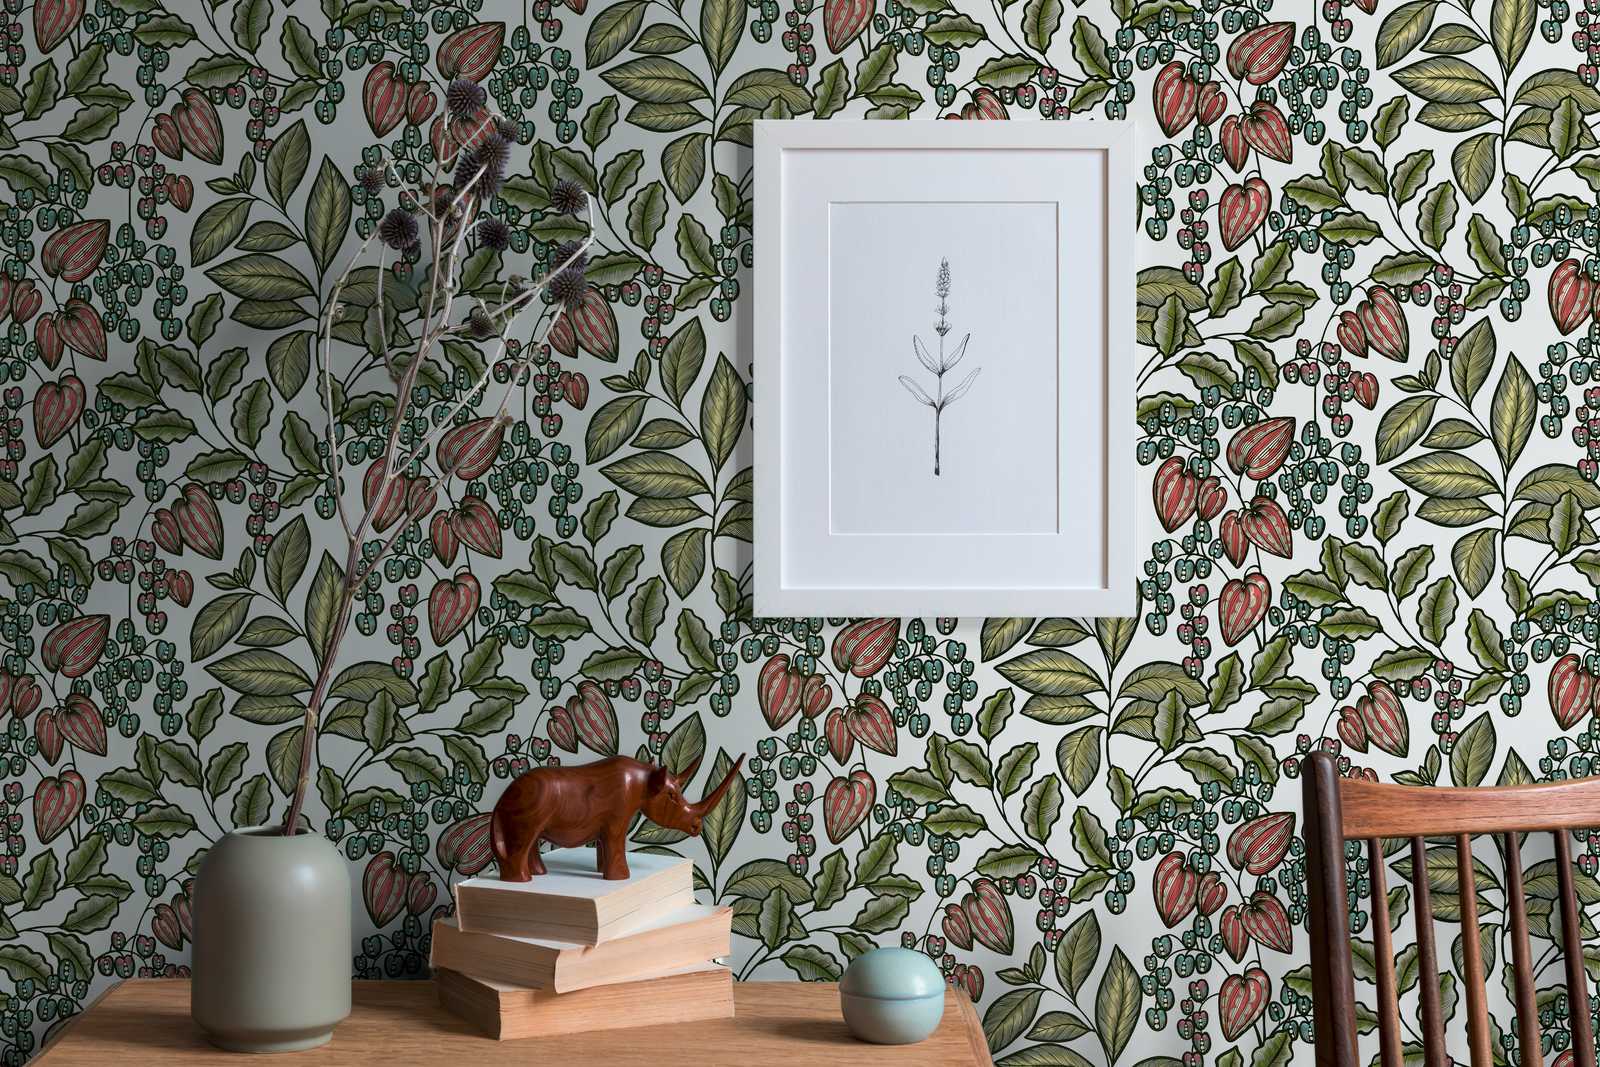             Bloemenbehang natuurontwerp Scandinavische print - veelkleurig, groen, wit
        